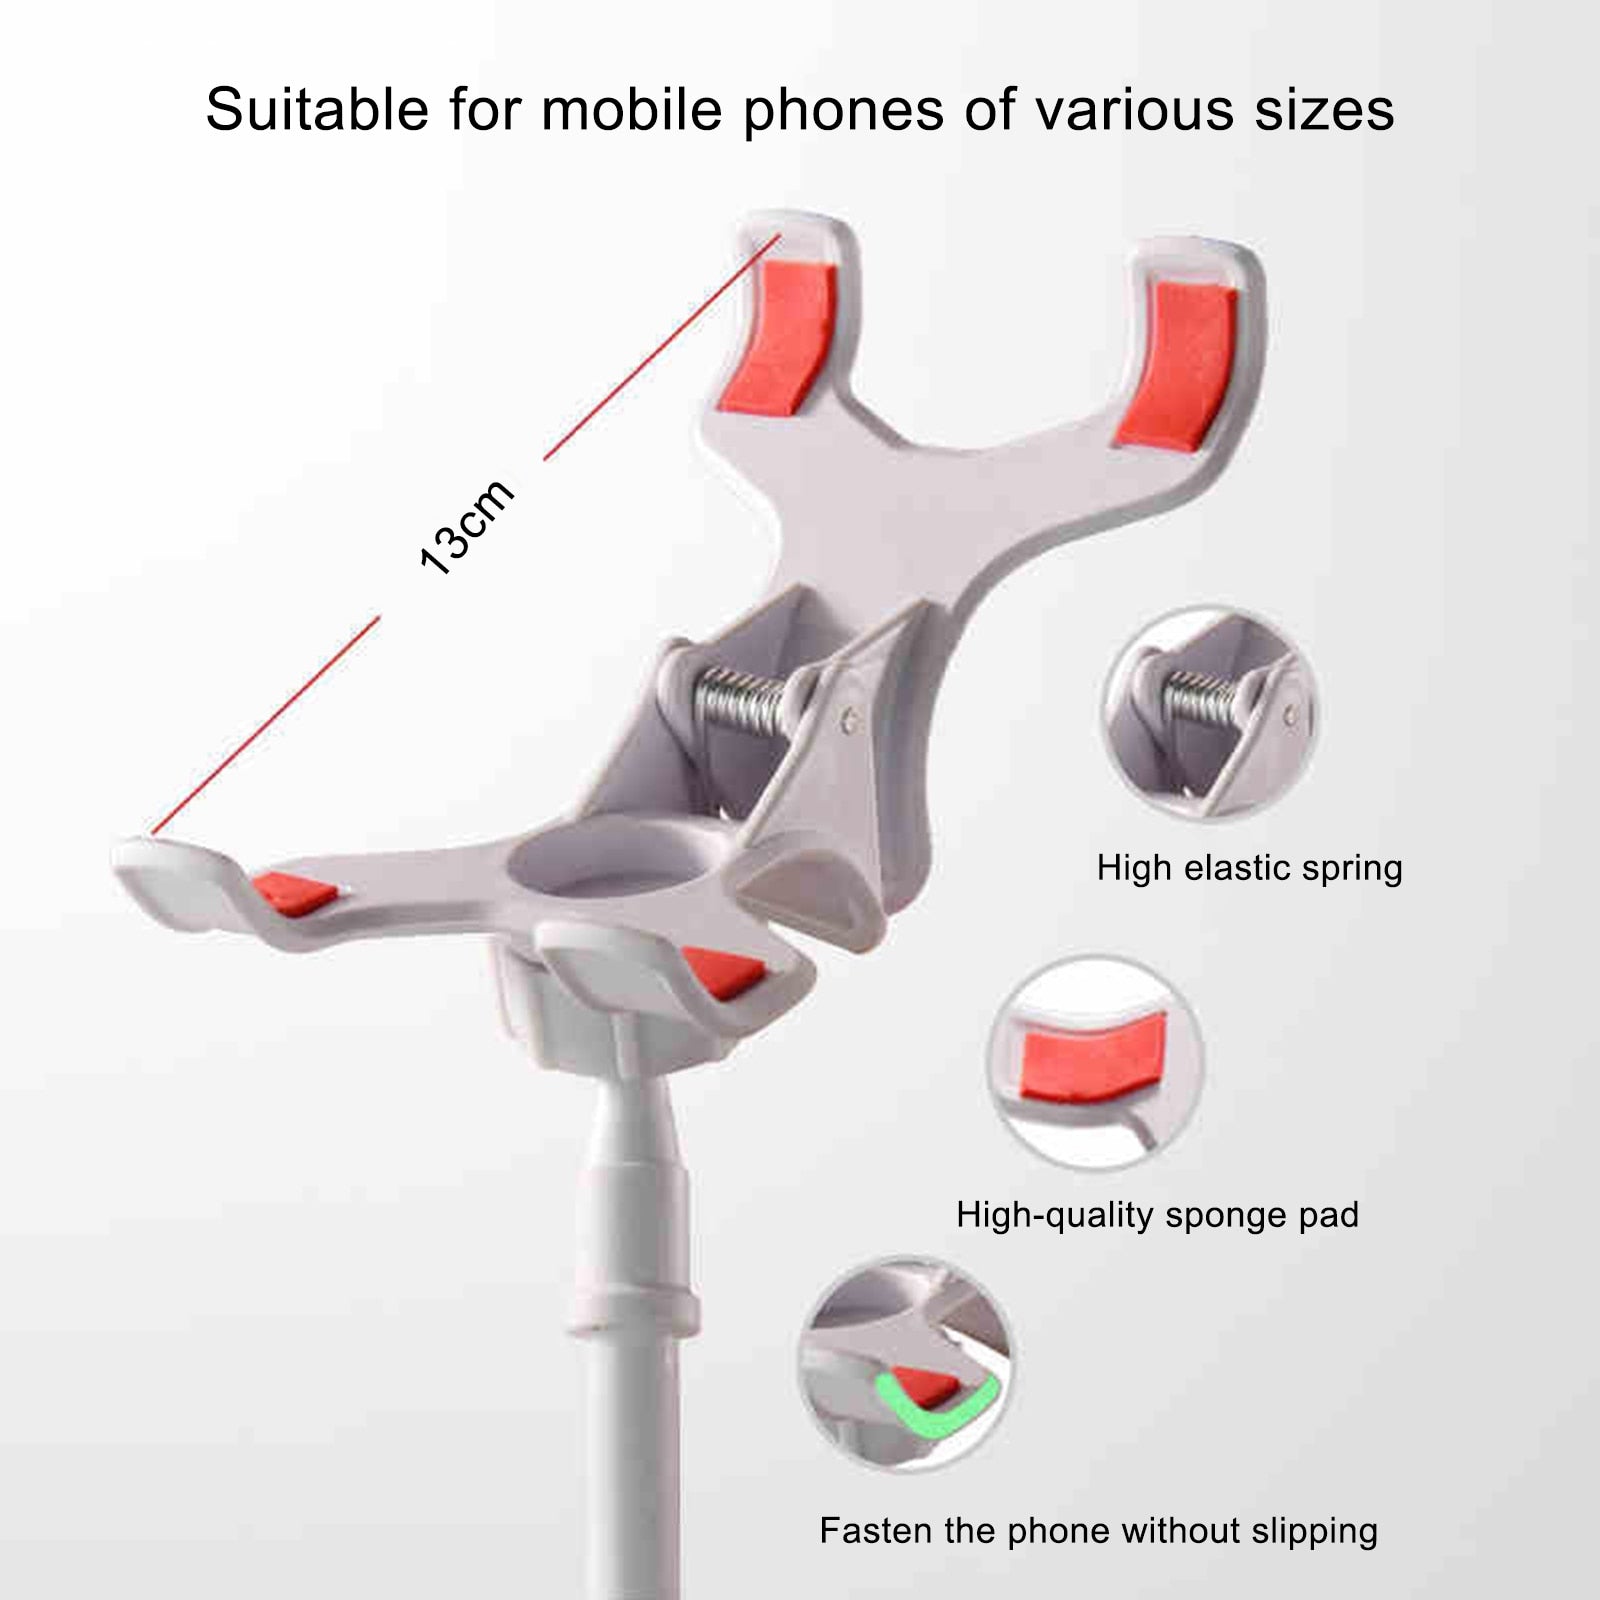 Adjustable Mobile Phone Holder Portable Flexible Lazy Bed Holder for Cell Phone Universal Desktop Stand Desk Mount Phone Bracket